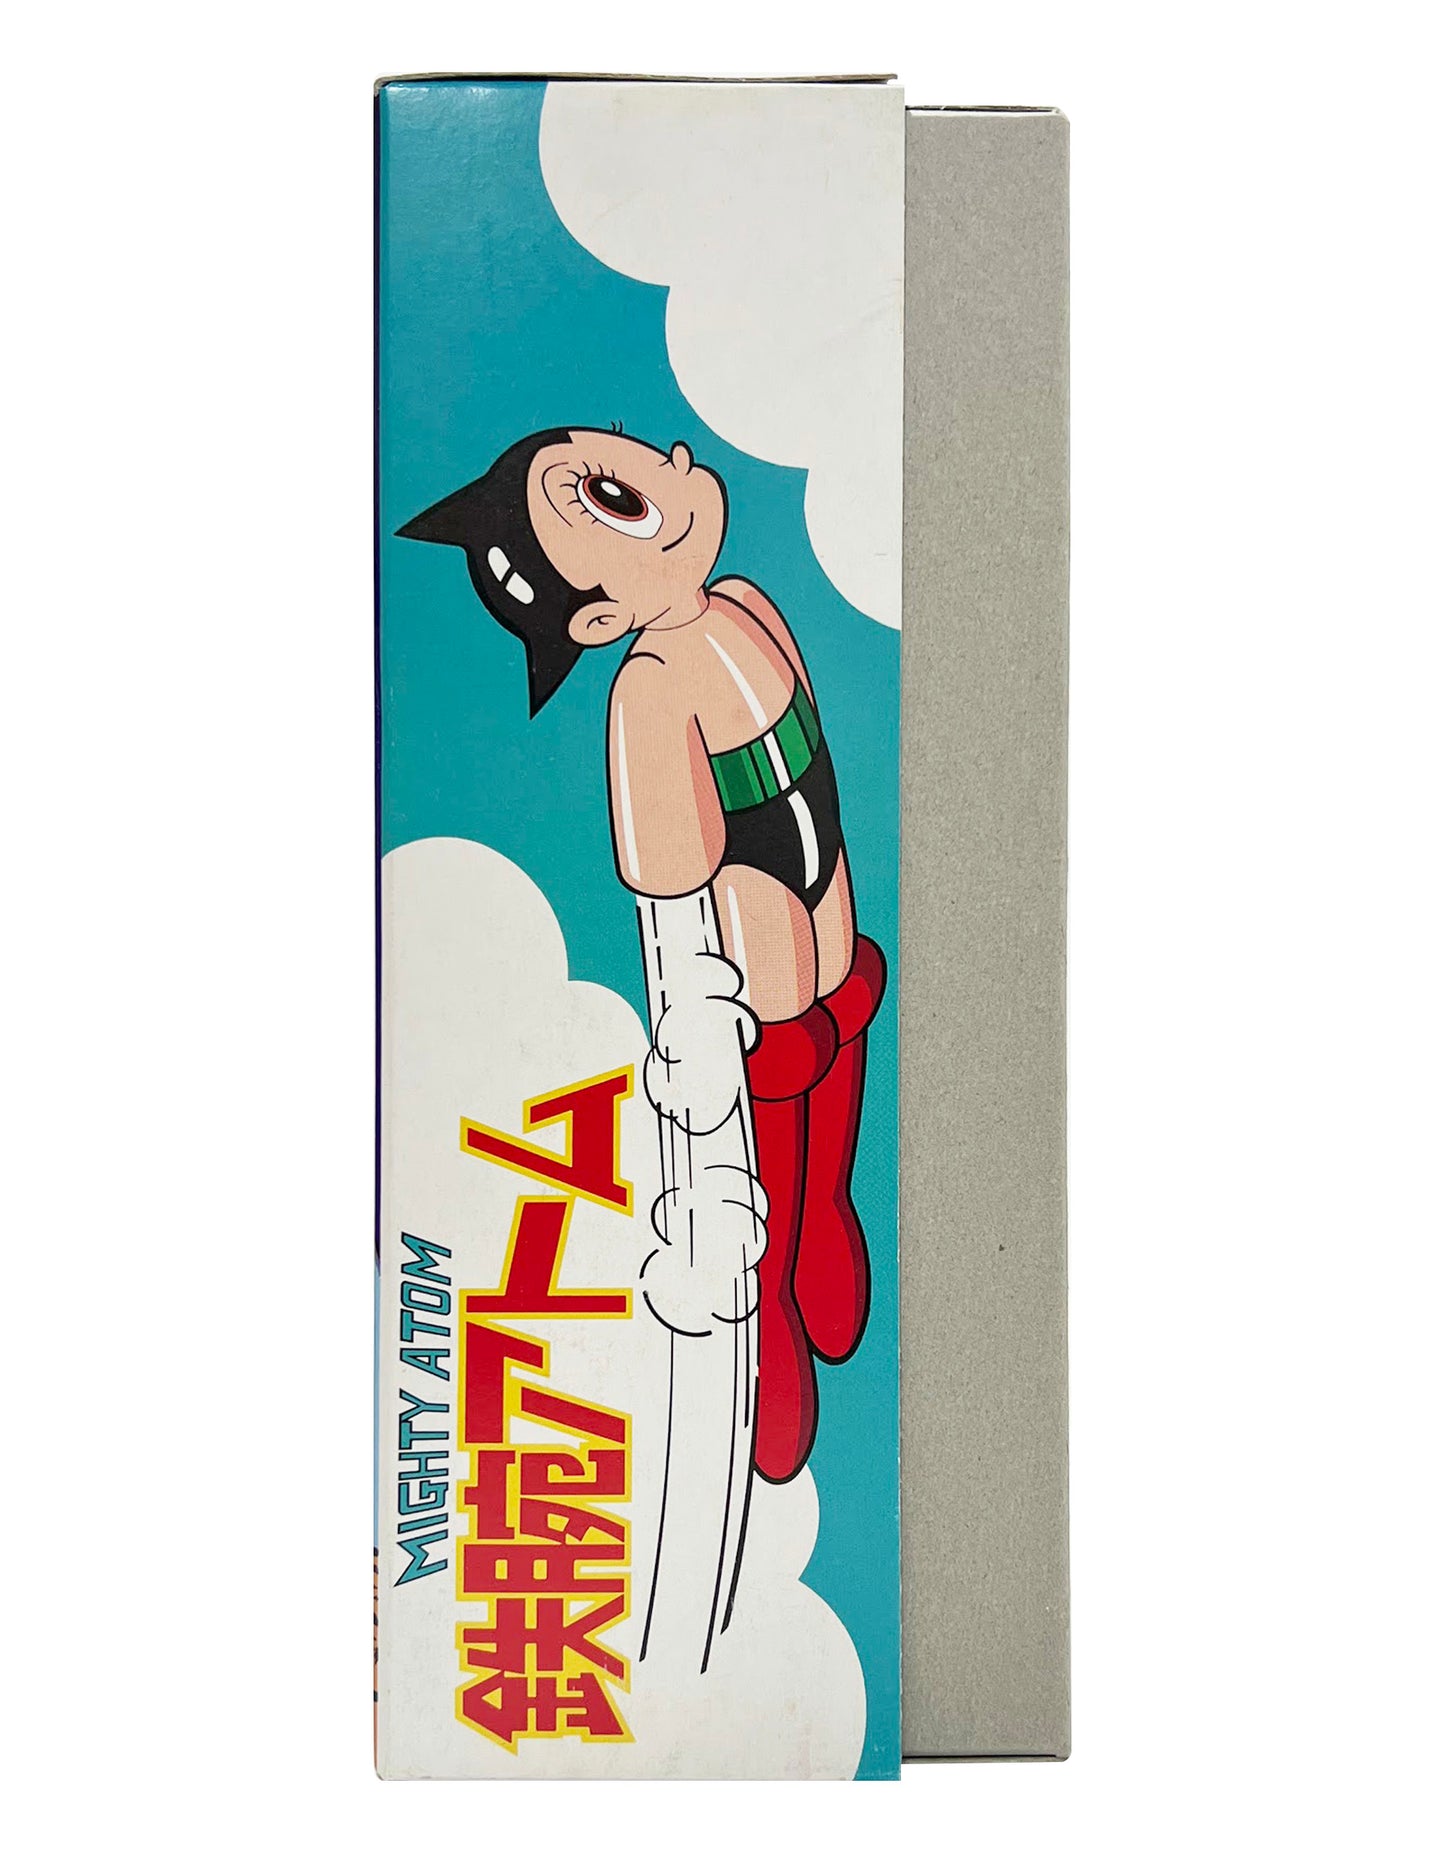 Billiken Shokai: Tezuka Productions - Astro Boy Mighty Atom Tin Toy Wind Up Made in Japan